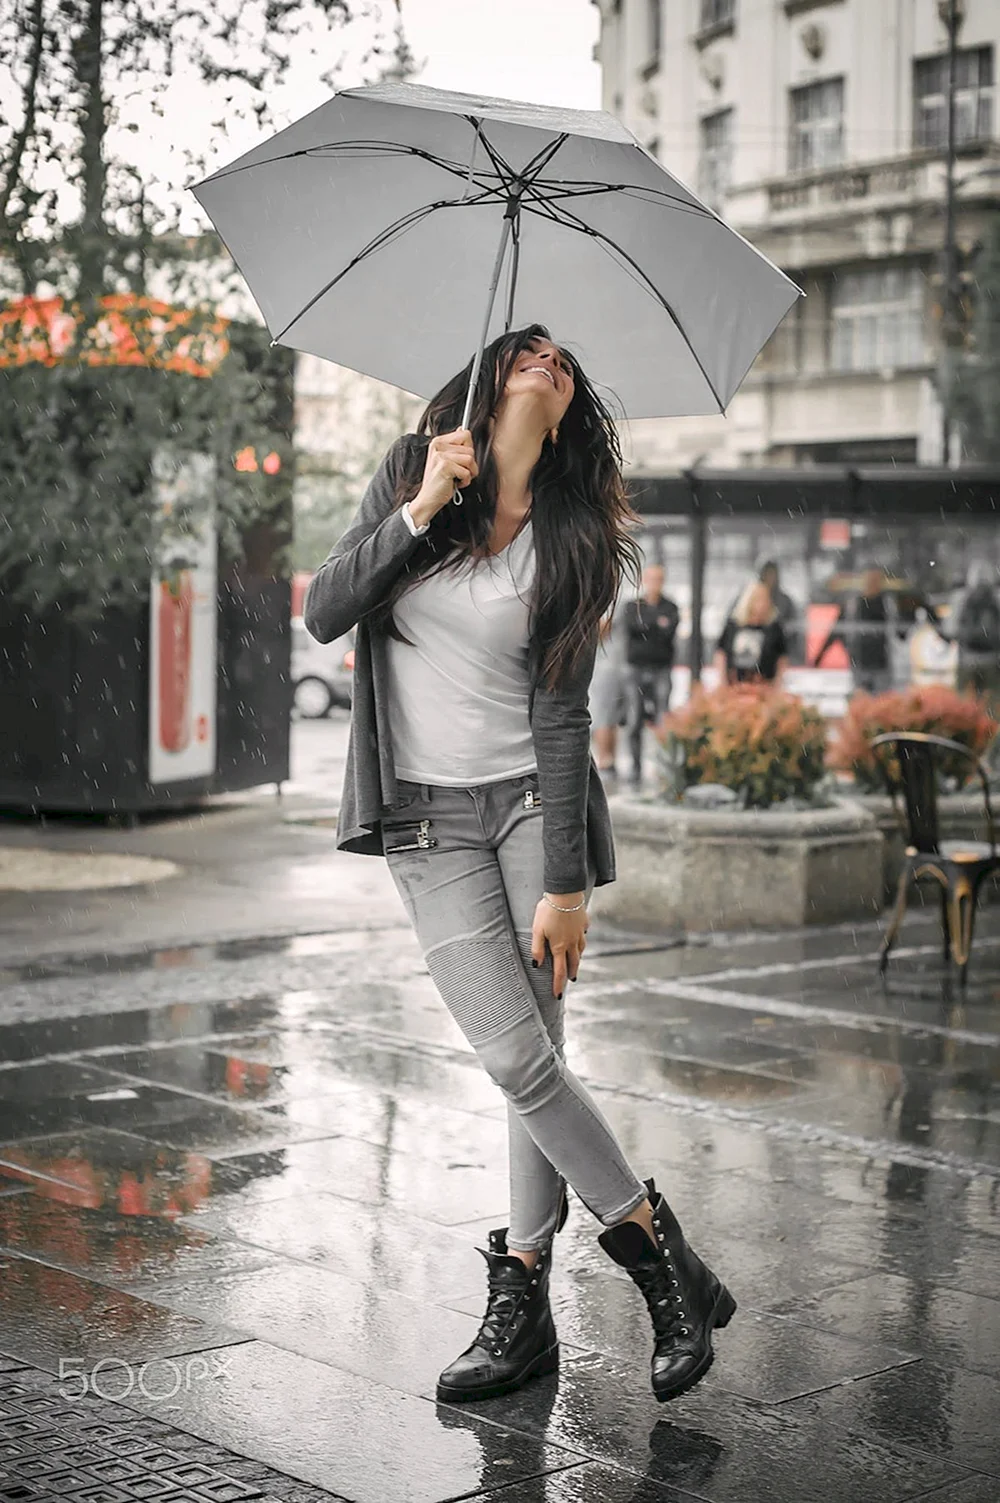 Woman Rain Umbrella